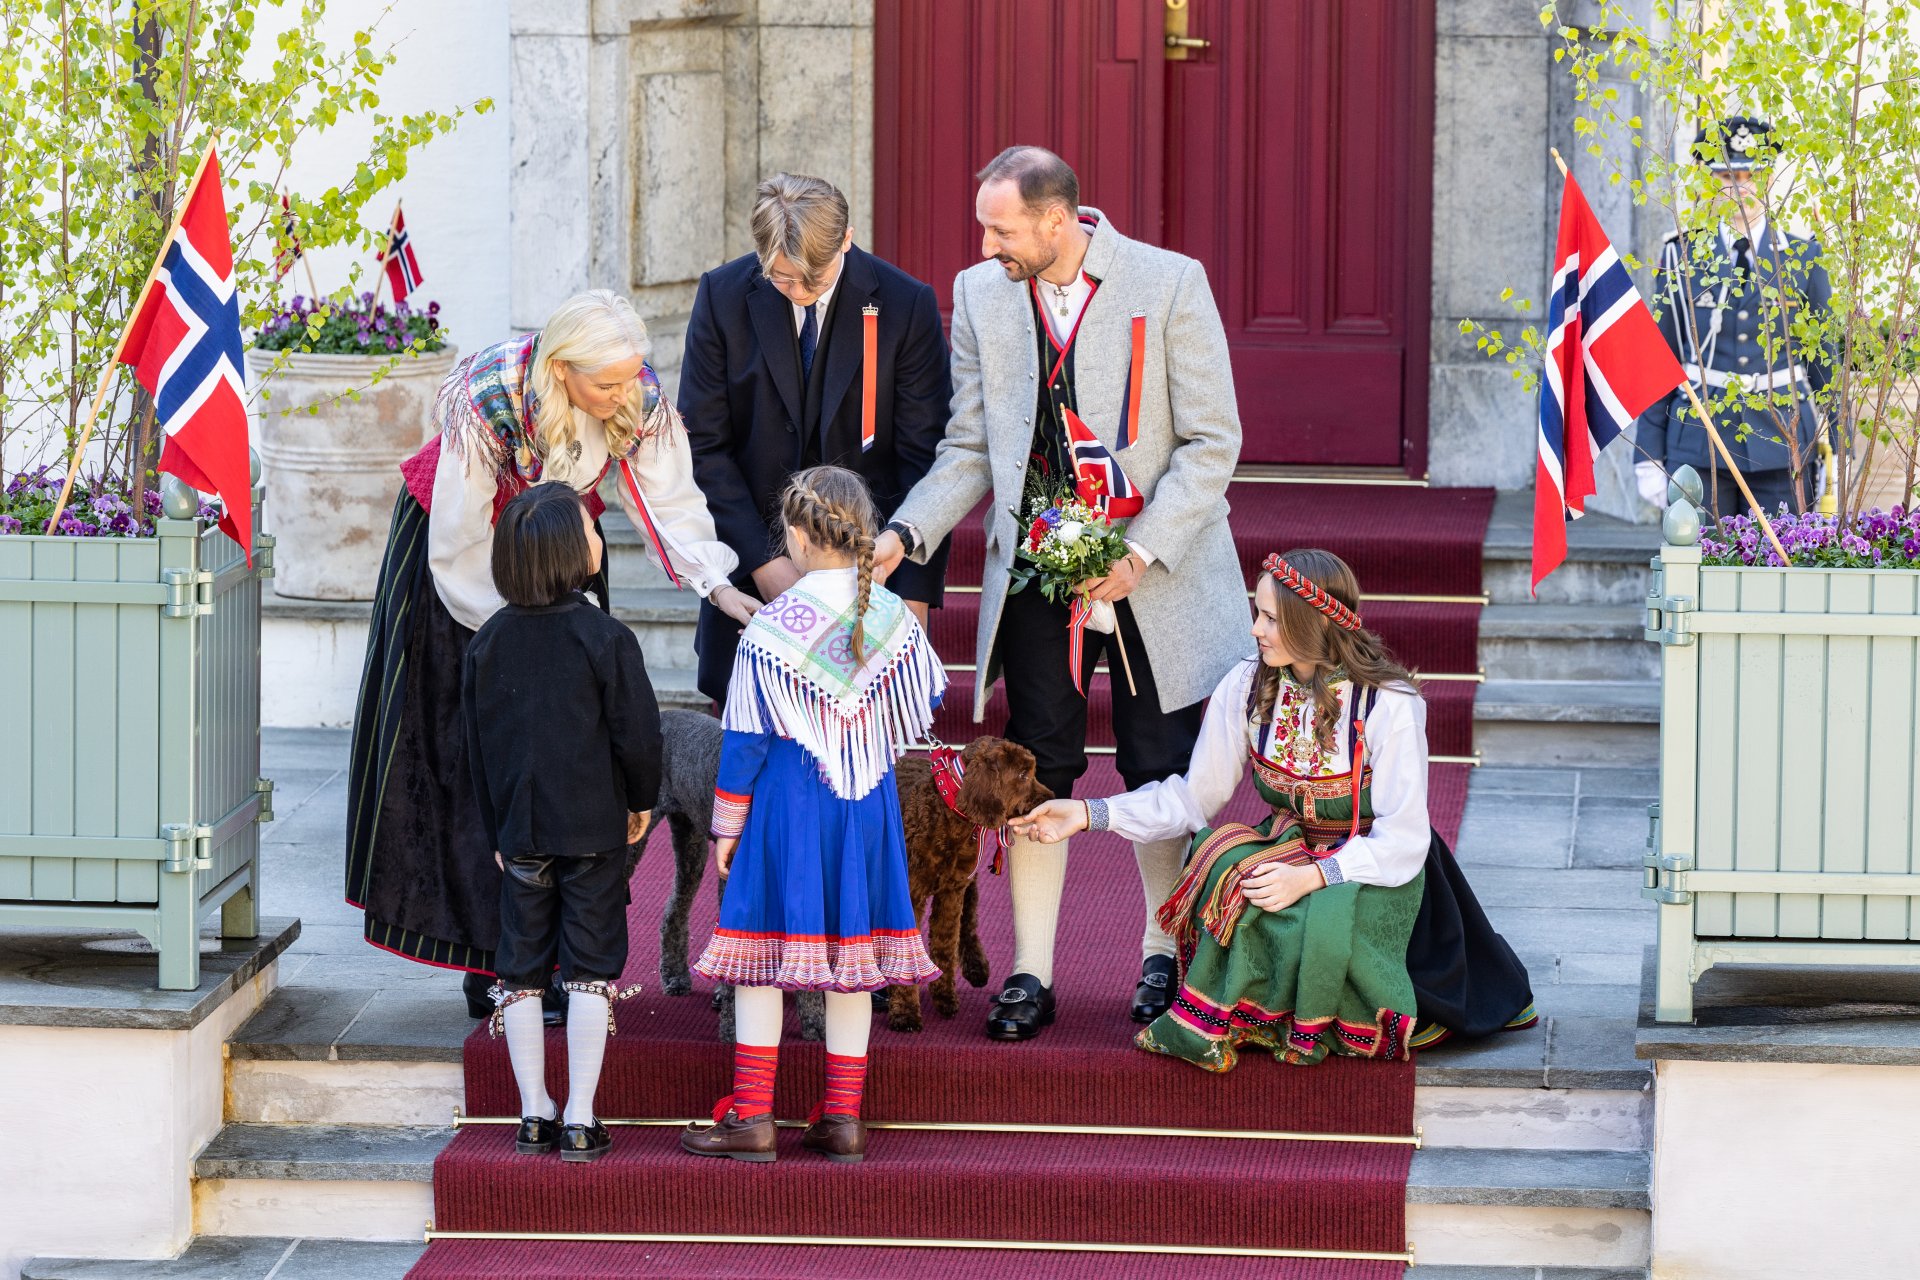 Престолонаследникът Мете-Марит от Норвегия, принц Свере Магнус от Норвегия, престолонаследникът Хокон от Норвегия и принцеса Ингрид Александра от Норвегия получават цветя от две деца по време на детския парад в Скаугум, Аскер на Норвегия, който е  Национален празник (отляво надясно).